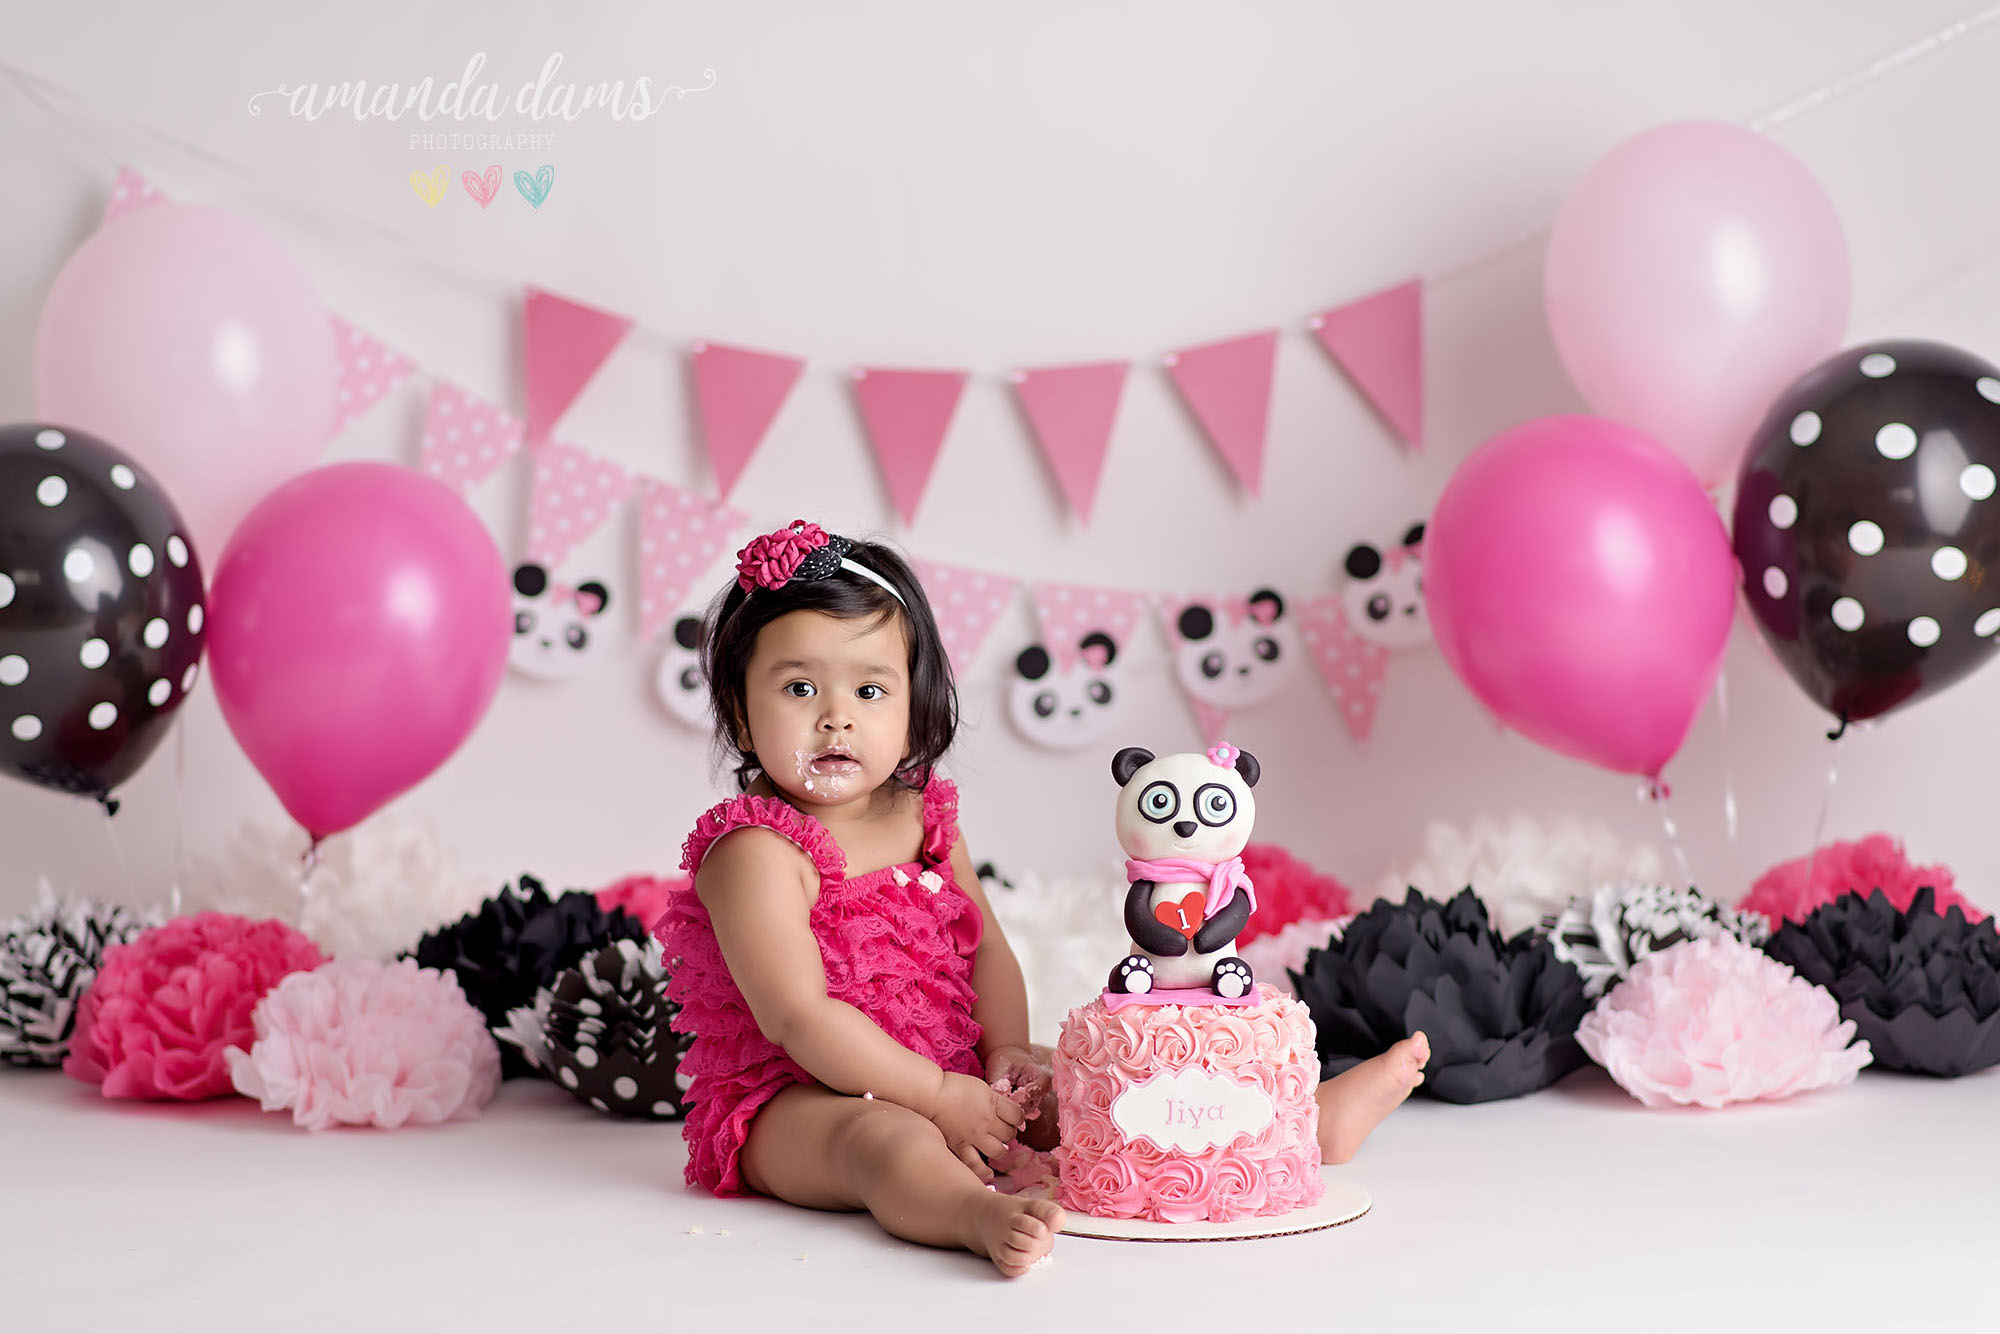 Panda Bear Pink White Black Cake Smash Amanda Dams Photography